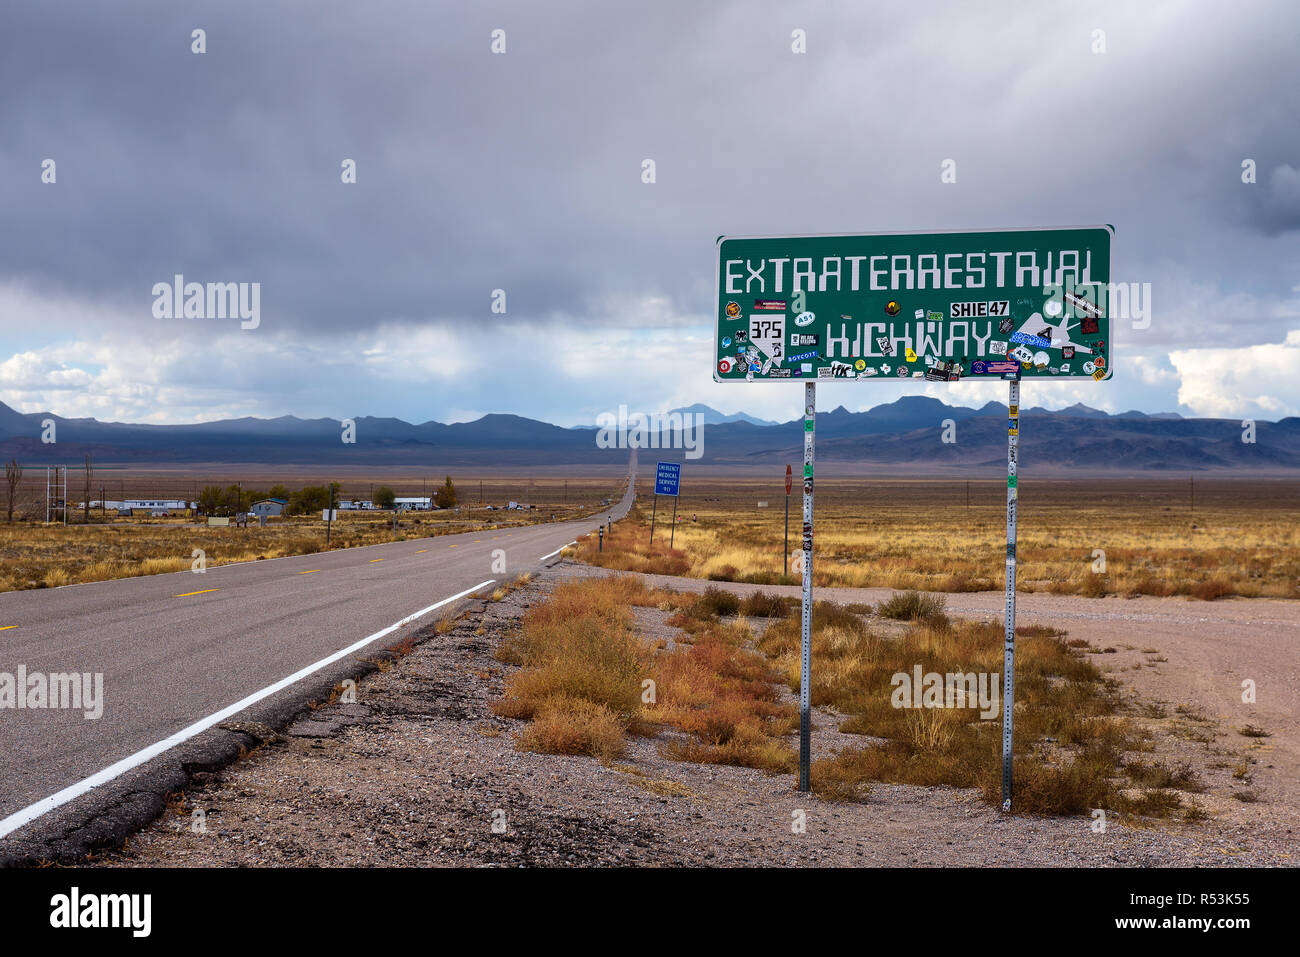 Signalisation routière pour l'autoroute de l'extraterrestre au Nevada Banque D'Images